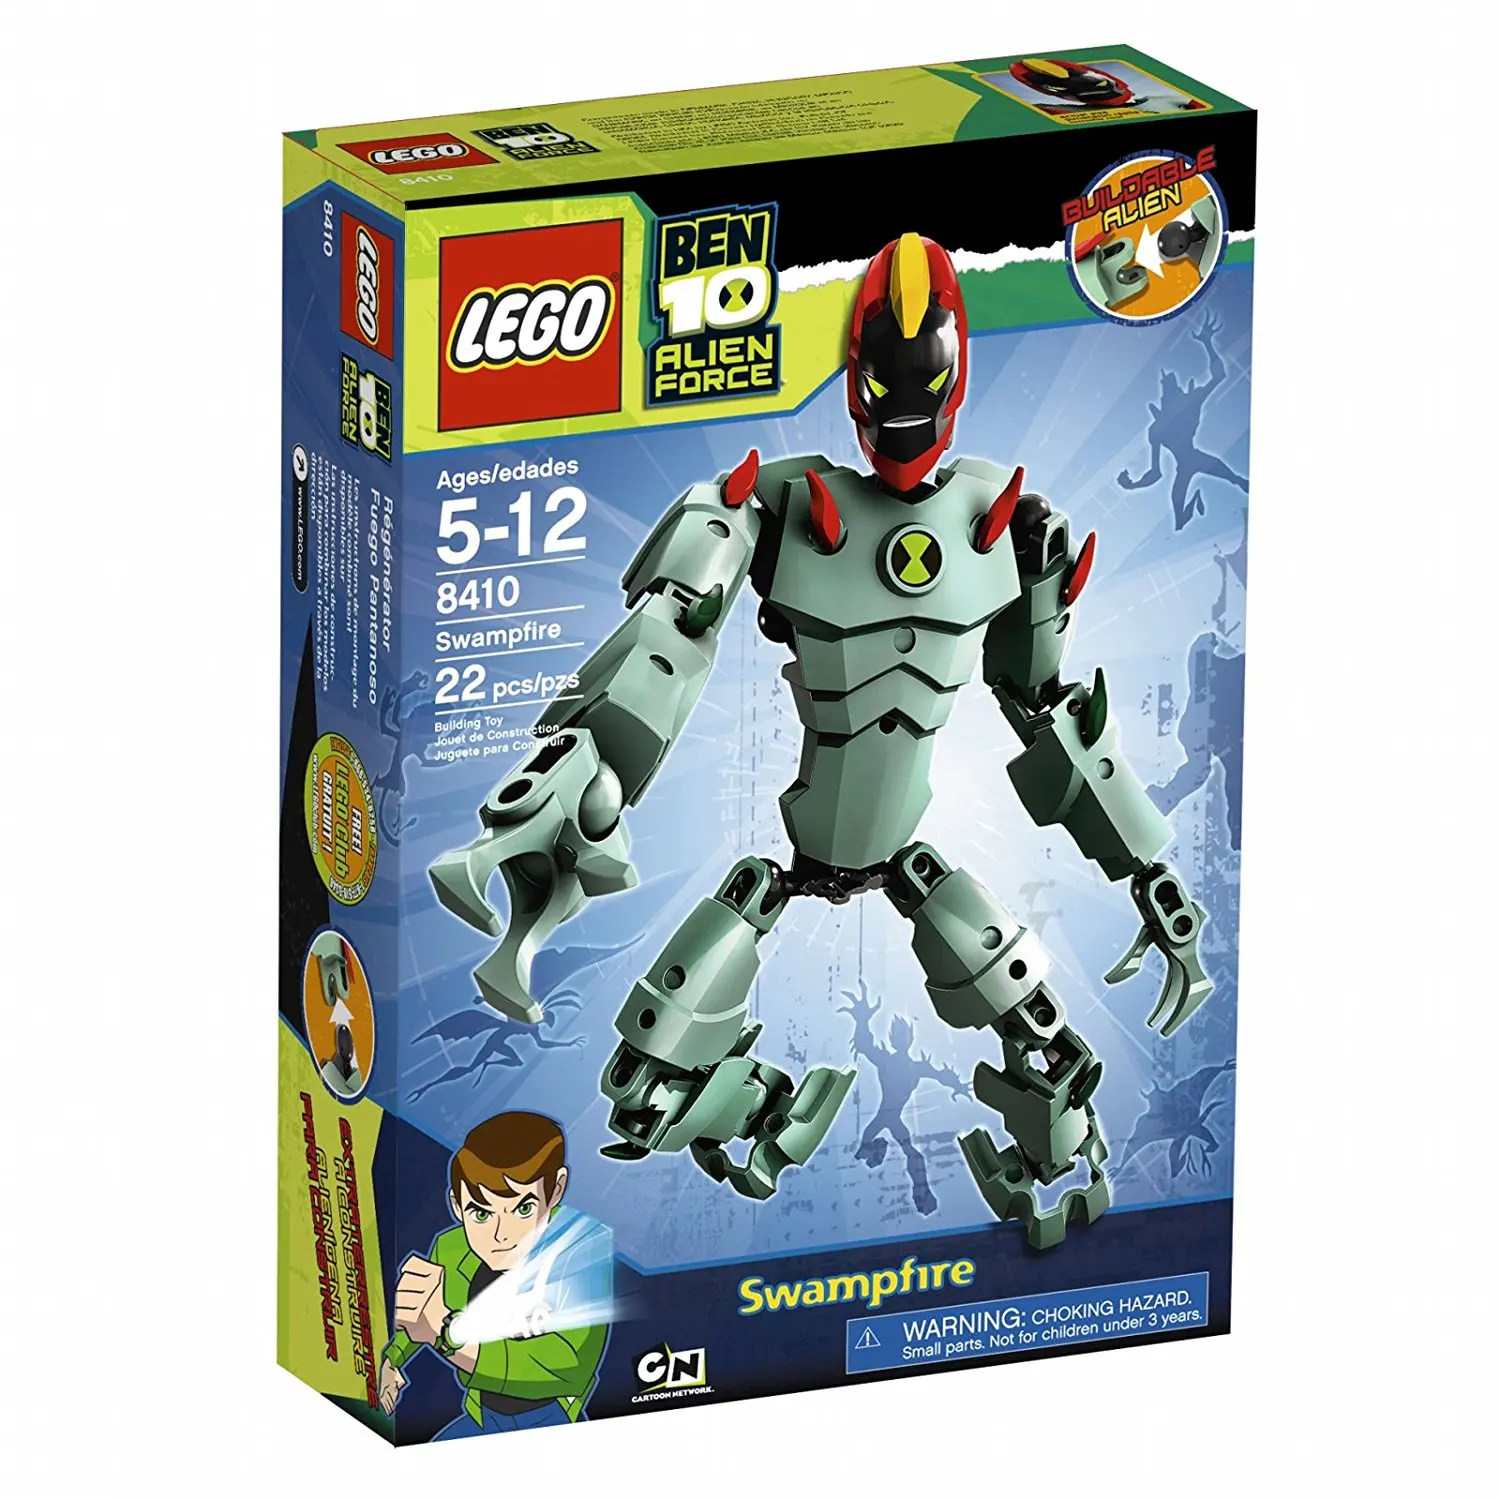 Buy LEGO Ben 10 Alien Force Swampfire (8410) in Cheap